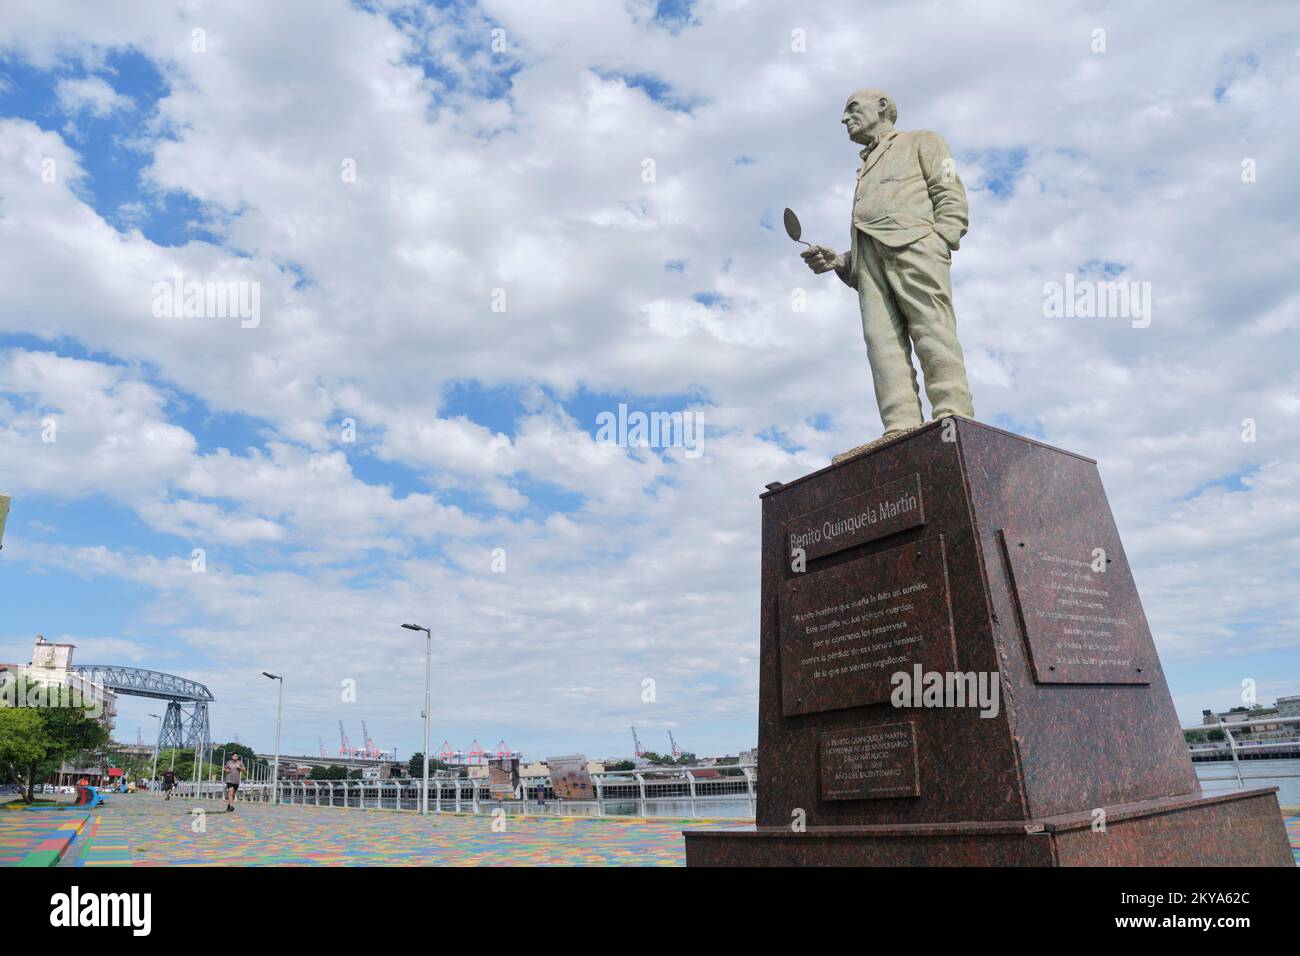 21 décembre 2021, Buenos Aires, Argentine: Sculpture du peintre et philanthrope Benito Quinquela Martin dans le quartier de la Boca, son retour au RI Banque D'Images